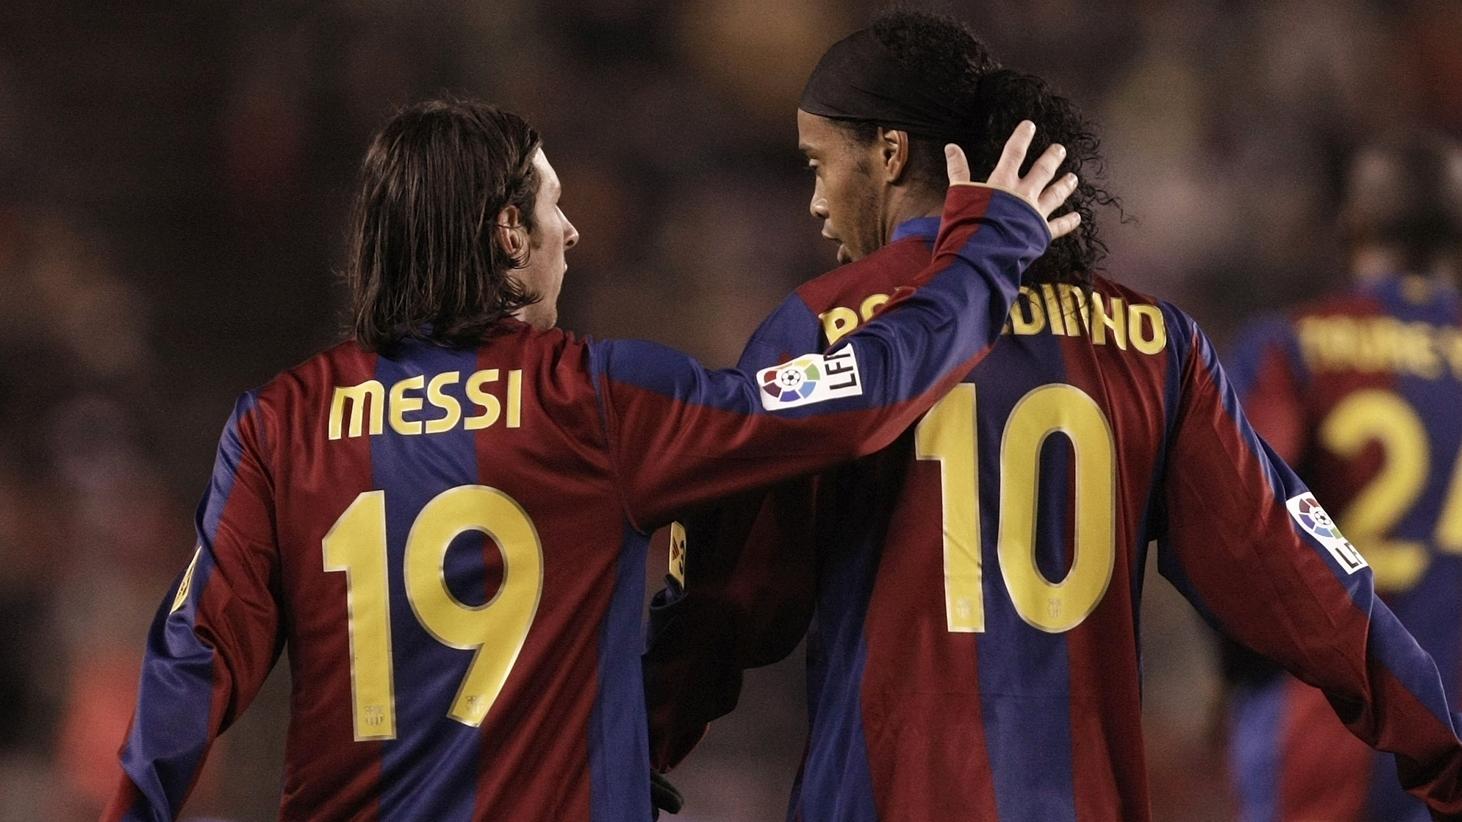 roni et Messi 1